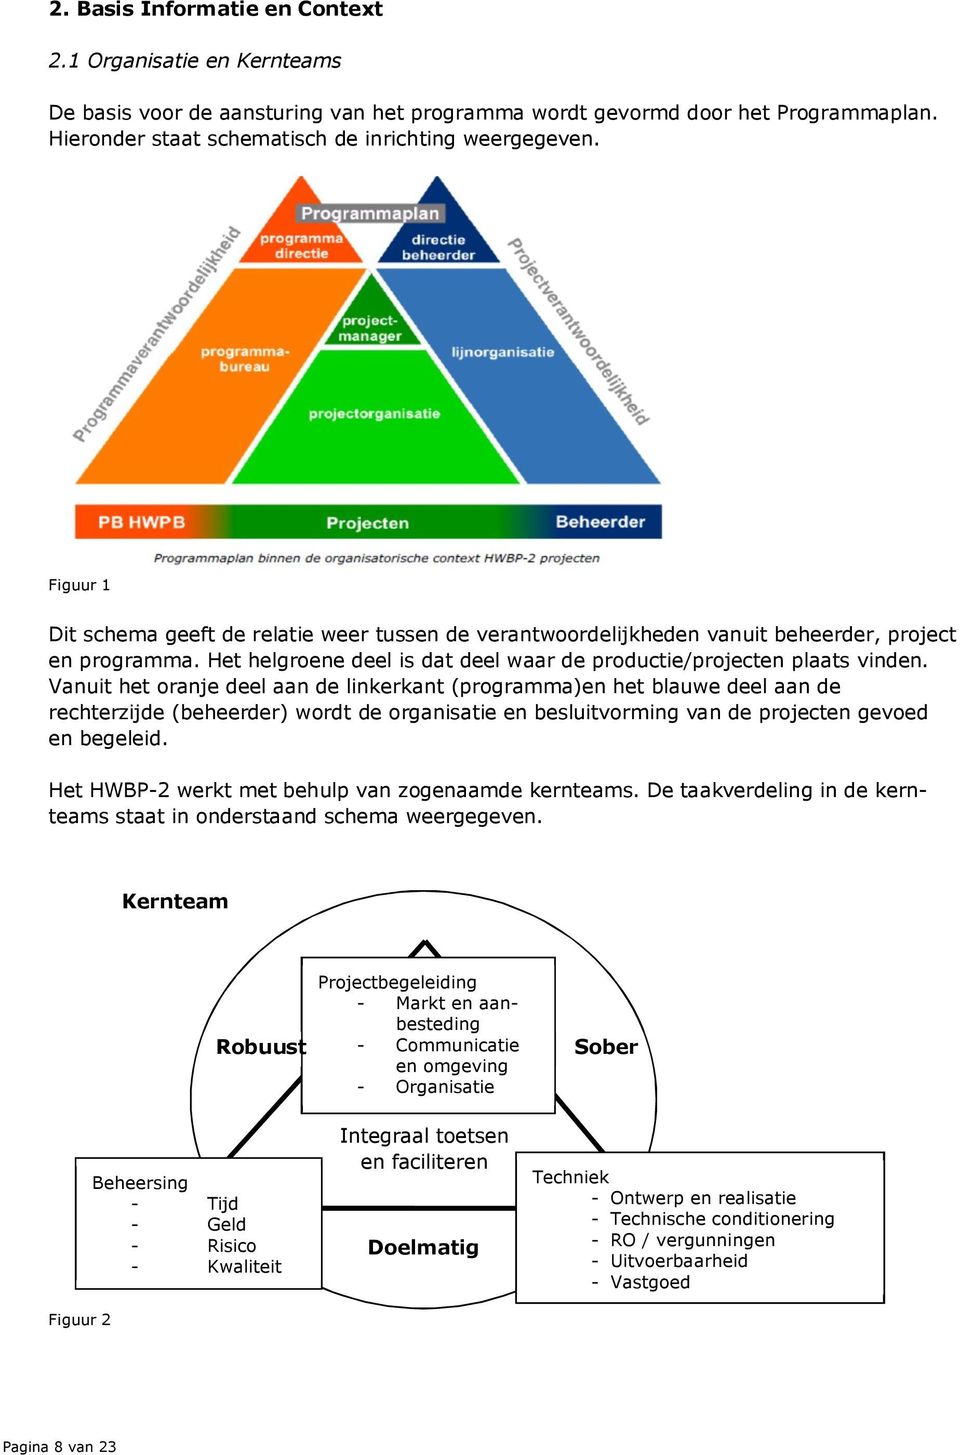 Vanuit het oranje deel aan de linkerkant (programma)en het blauwe deel aan de rechterzijde (beheerder) wordt de organisatie en besluitvorming van de projecten gevoed en begeleid.